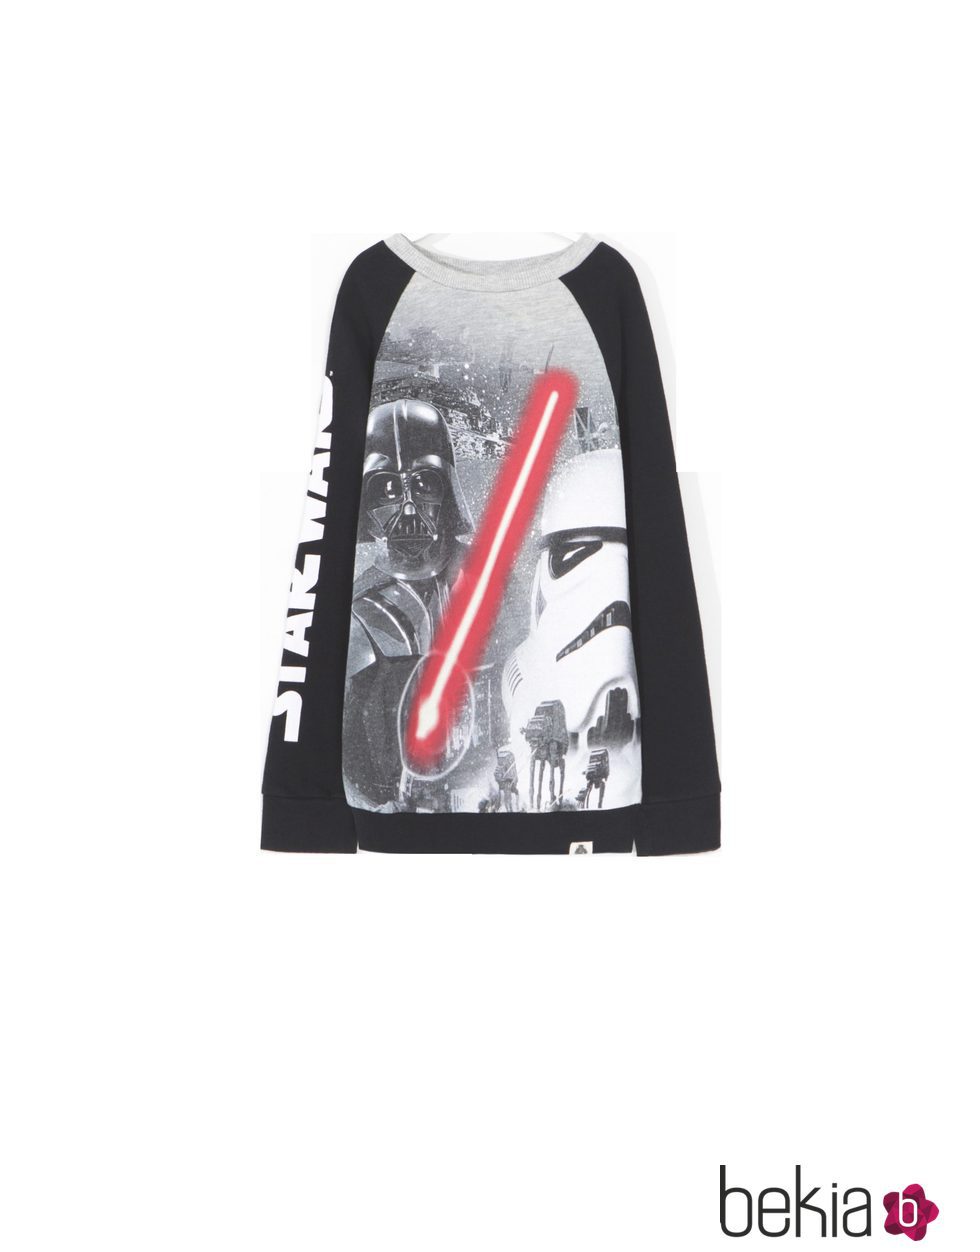 Camiseta con personajes Darth Vader y soldado imperial de 'Star Wars' para Lefties